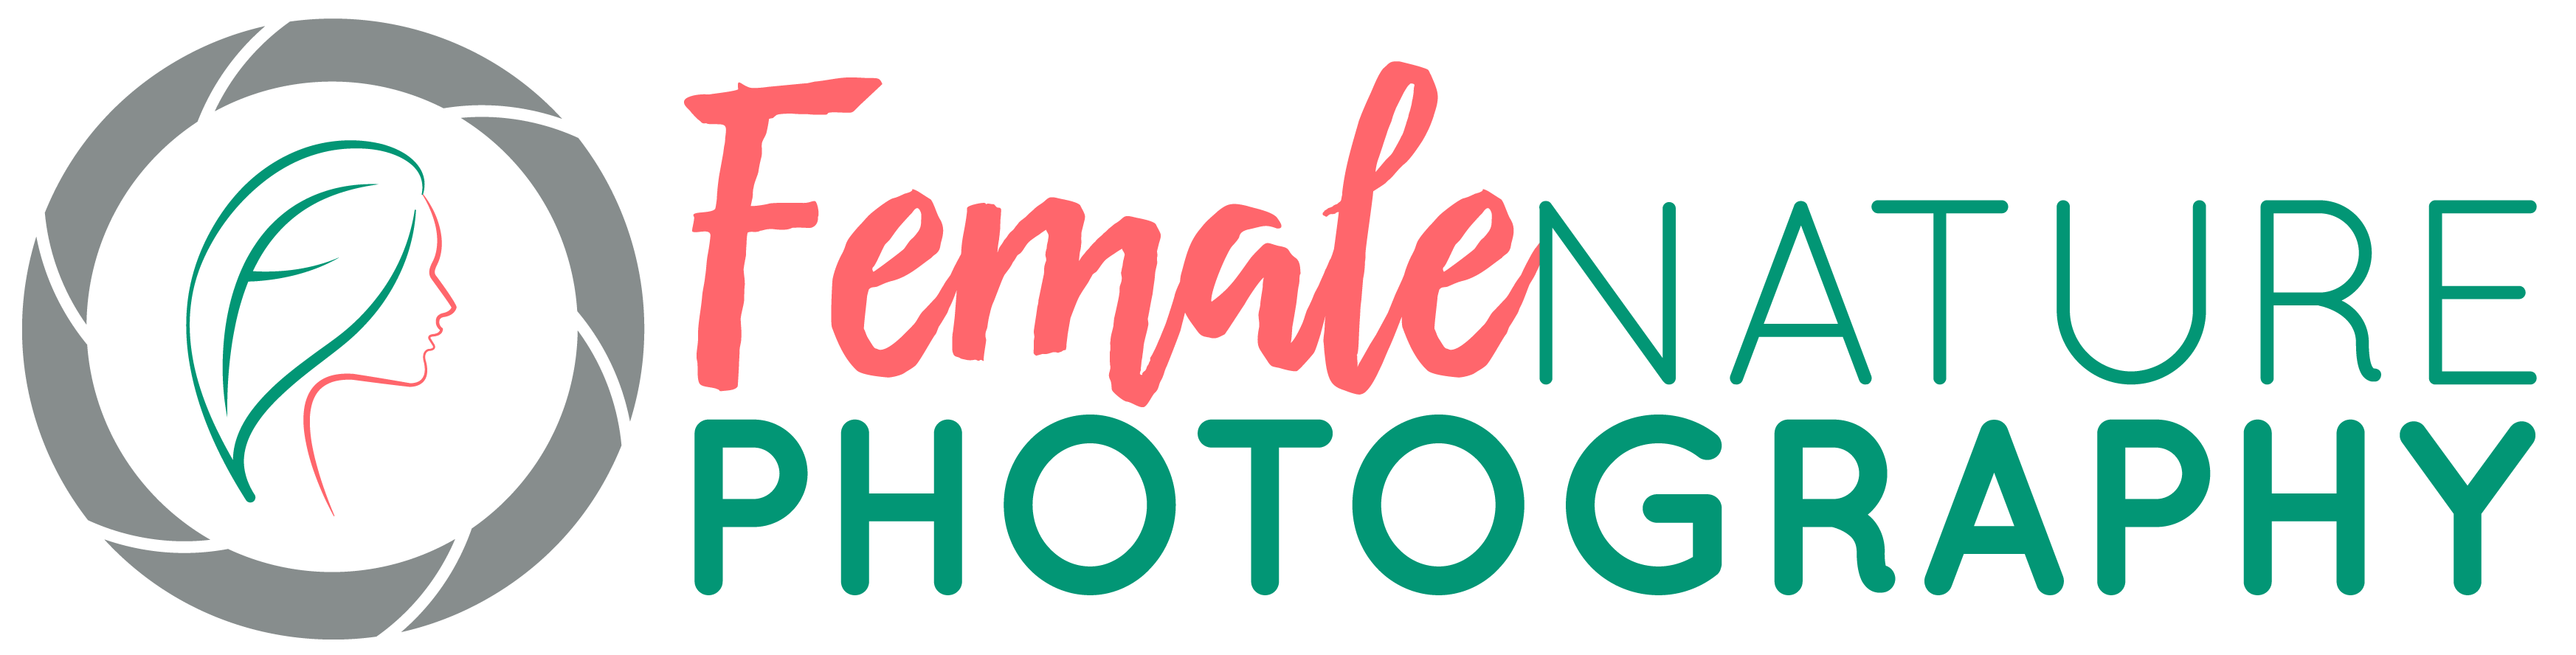 Female Nature Photography logo